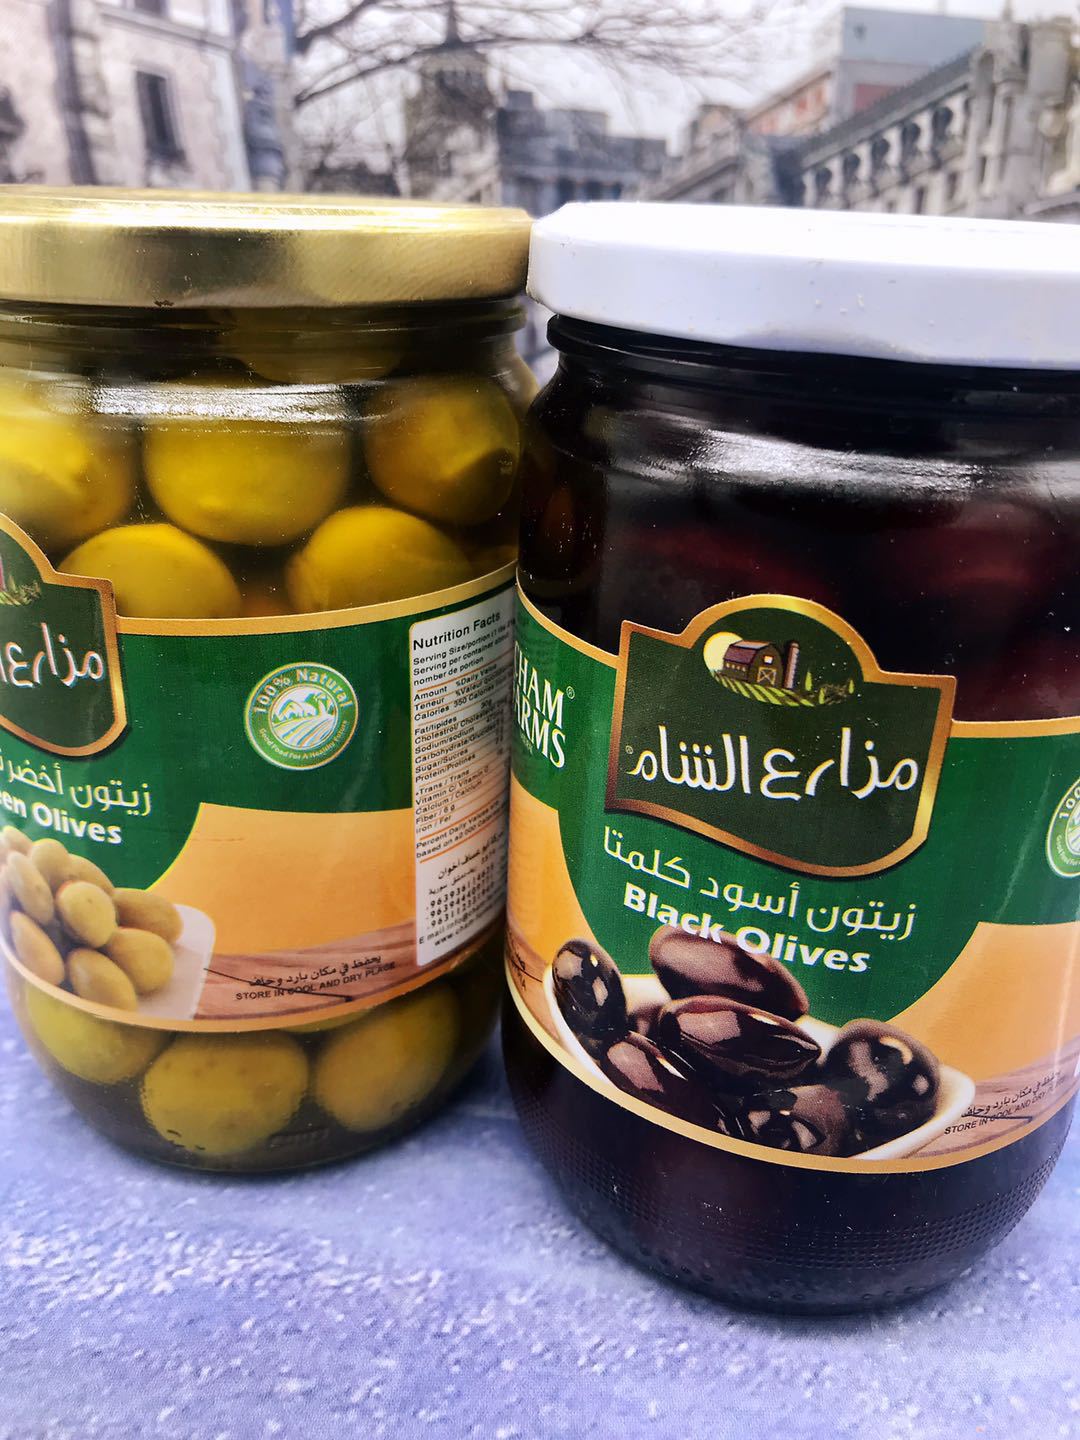 Syria Green Olives Black有核青橄榄 有核黑橄榄 即食橄榄果500g